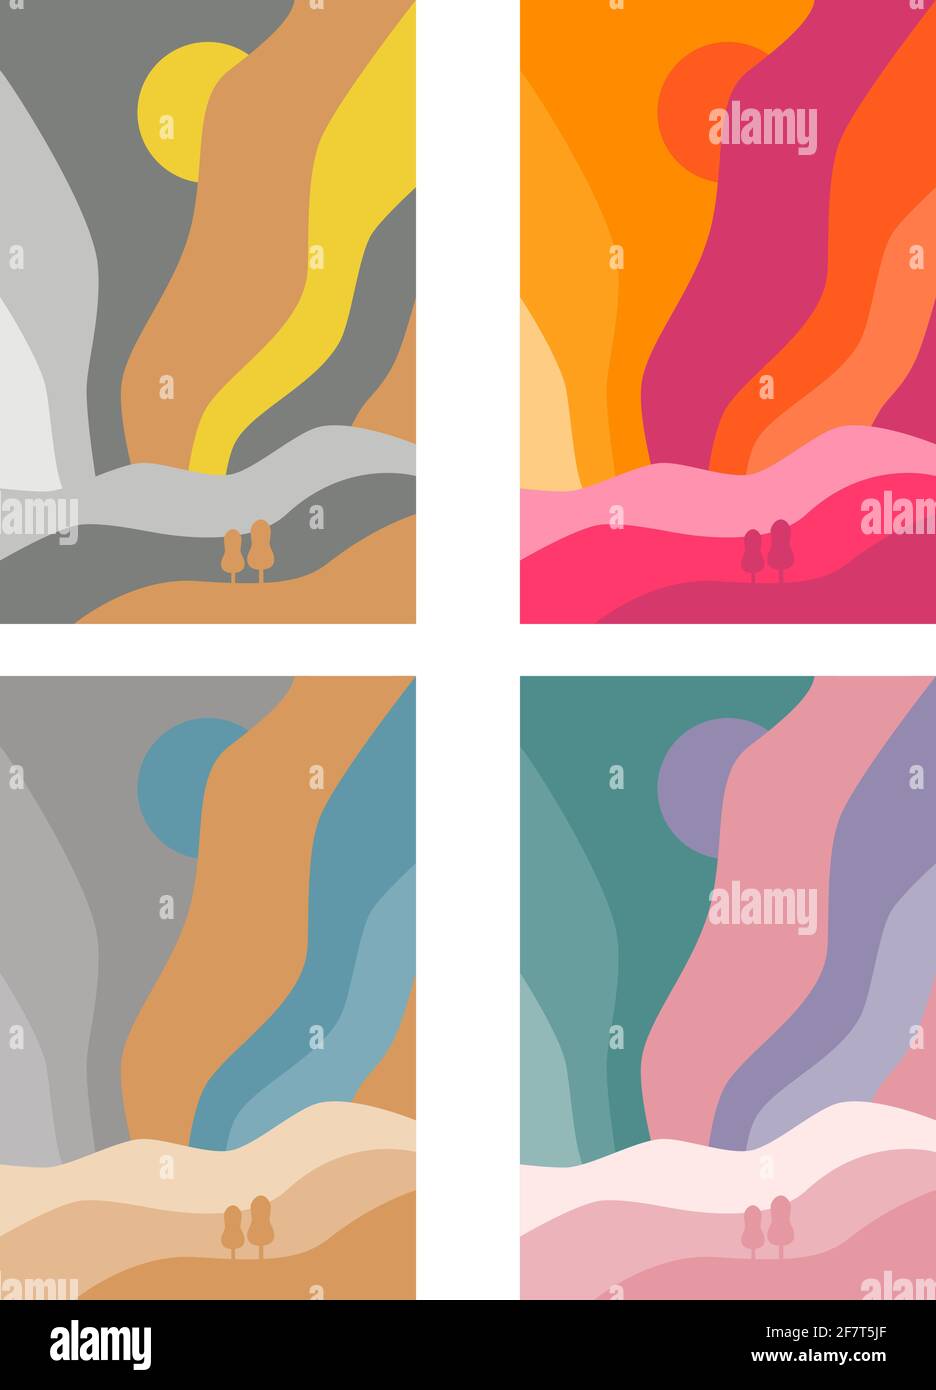 Abstrakte Landschaft farbenfroher Hintergrund. Aurora boreal Art Poster Set von Vektor-Illustration Stock Vektor